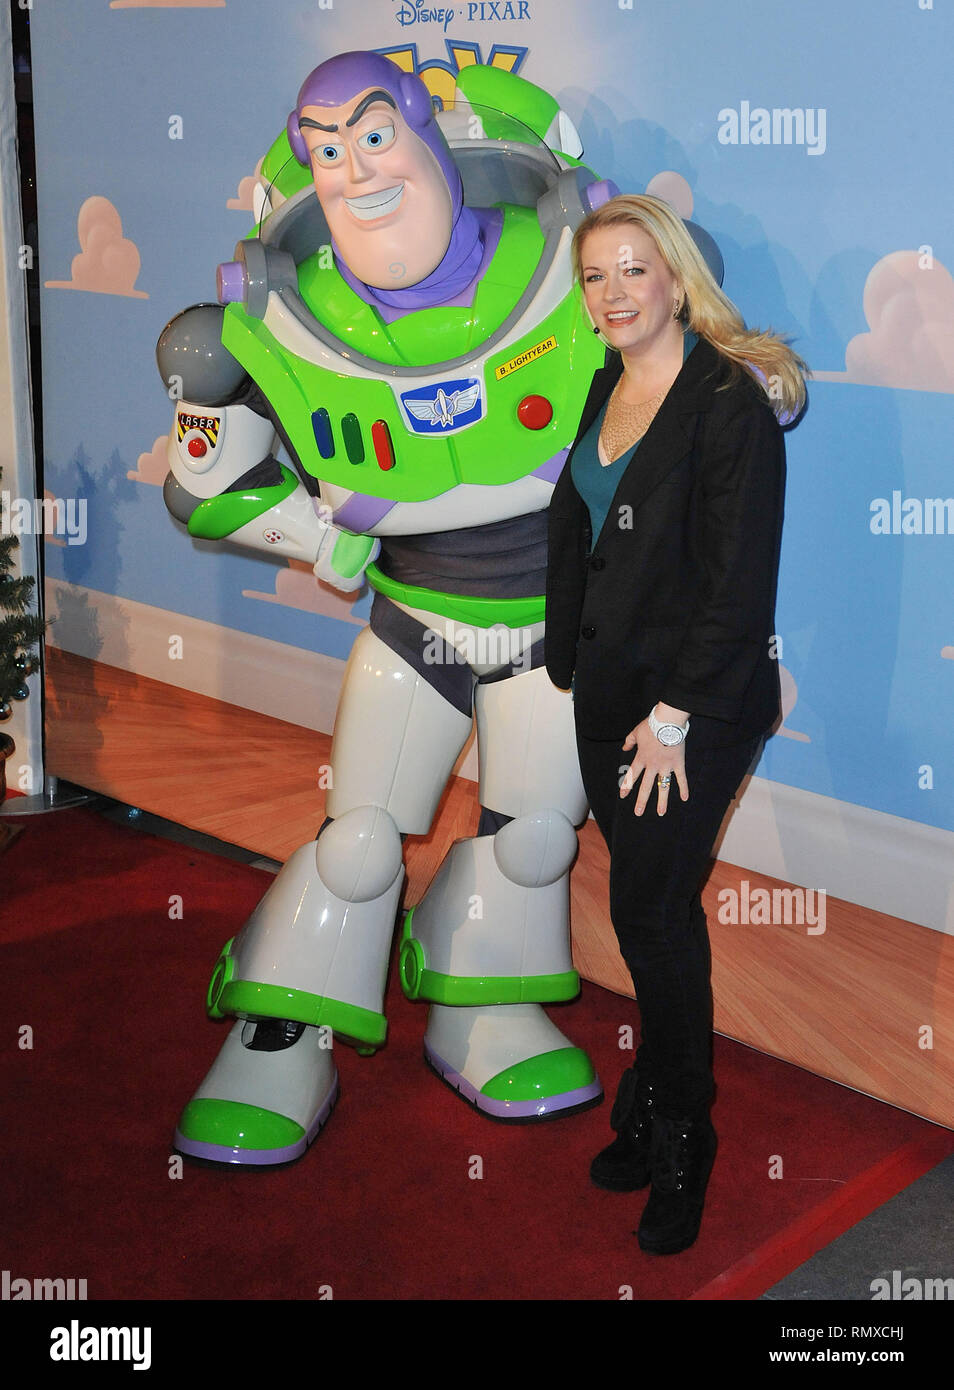 Melissa Joan Hart, retentir à Toy Story 3 sur la glace pour bénéficier  l'Hôpital des enfants sur le patin à glace à Los Angeles.Melissa Joan Hart,  Buzz 12 Événement dans la vie